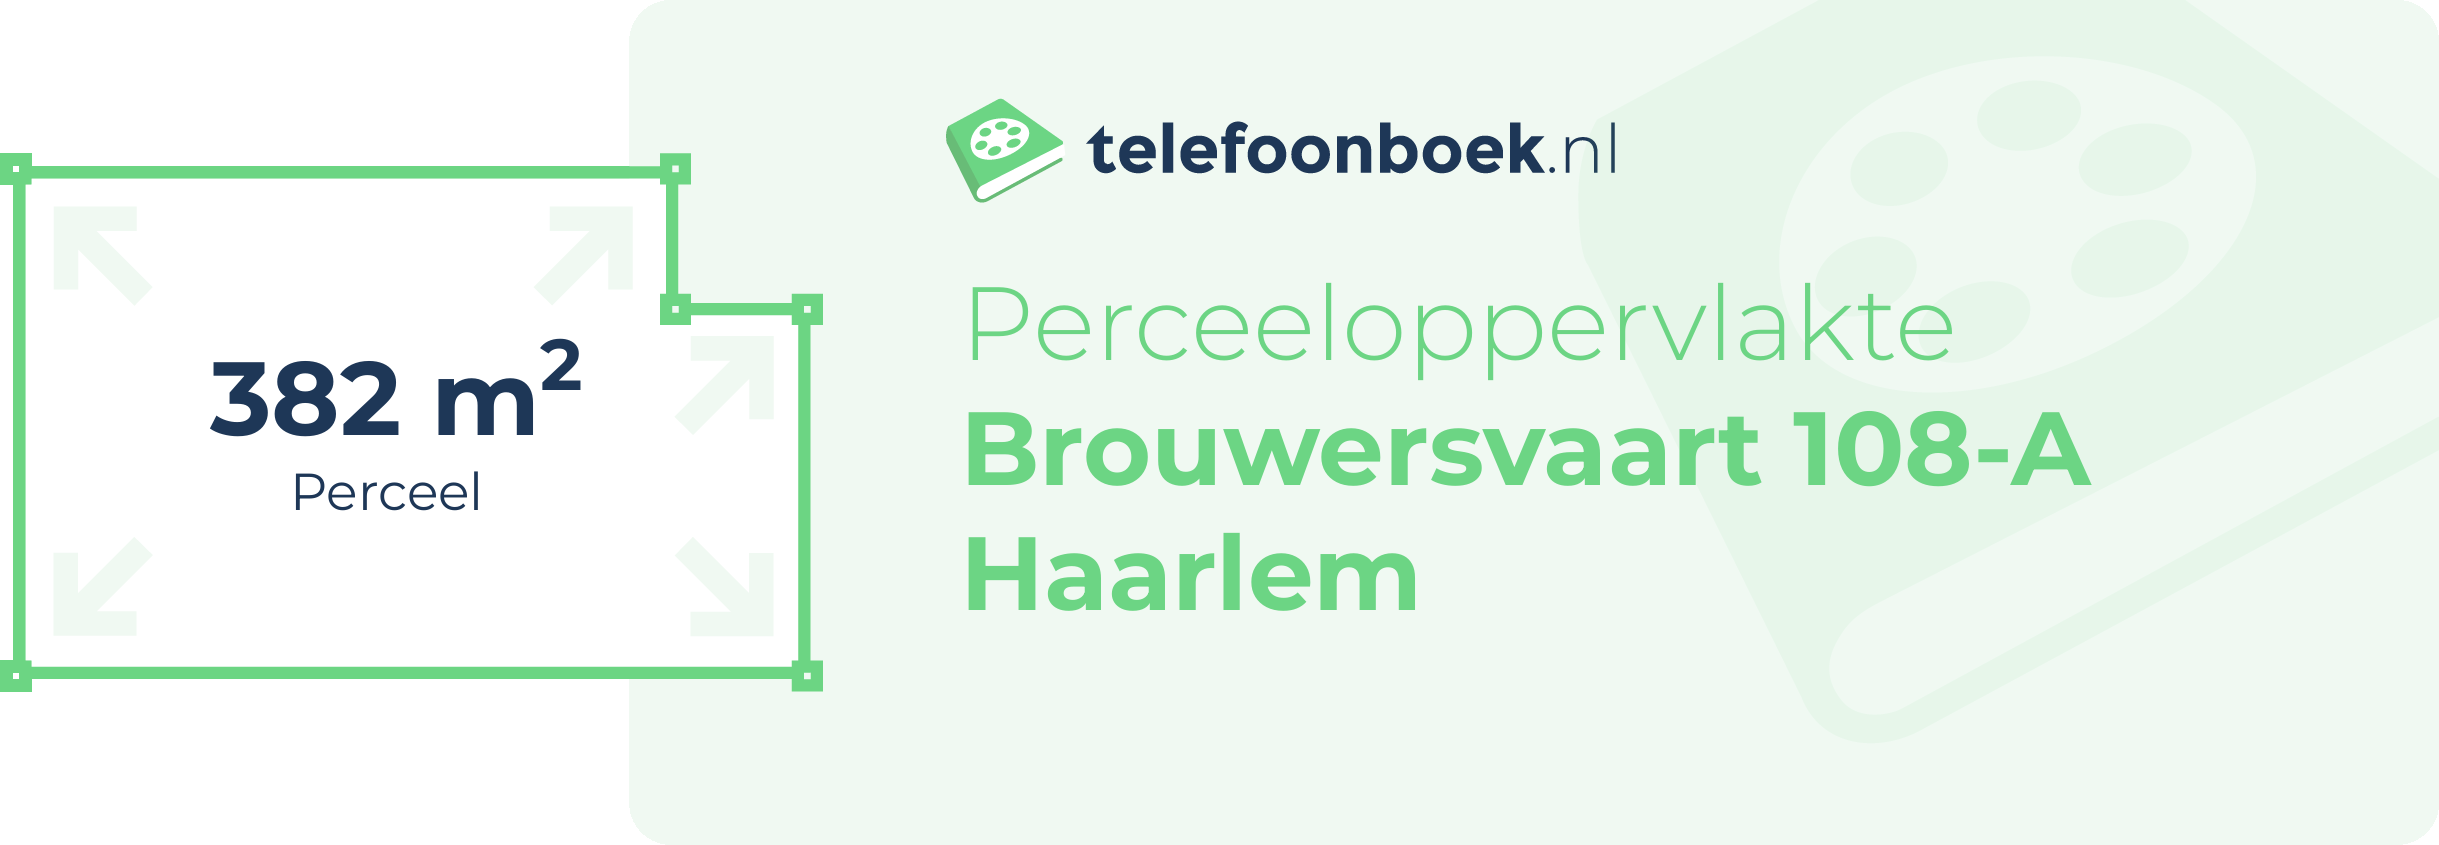 Perceeloppervlakte Brouwersvaart 108-A Haarlem